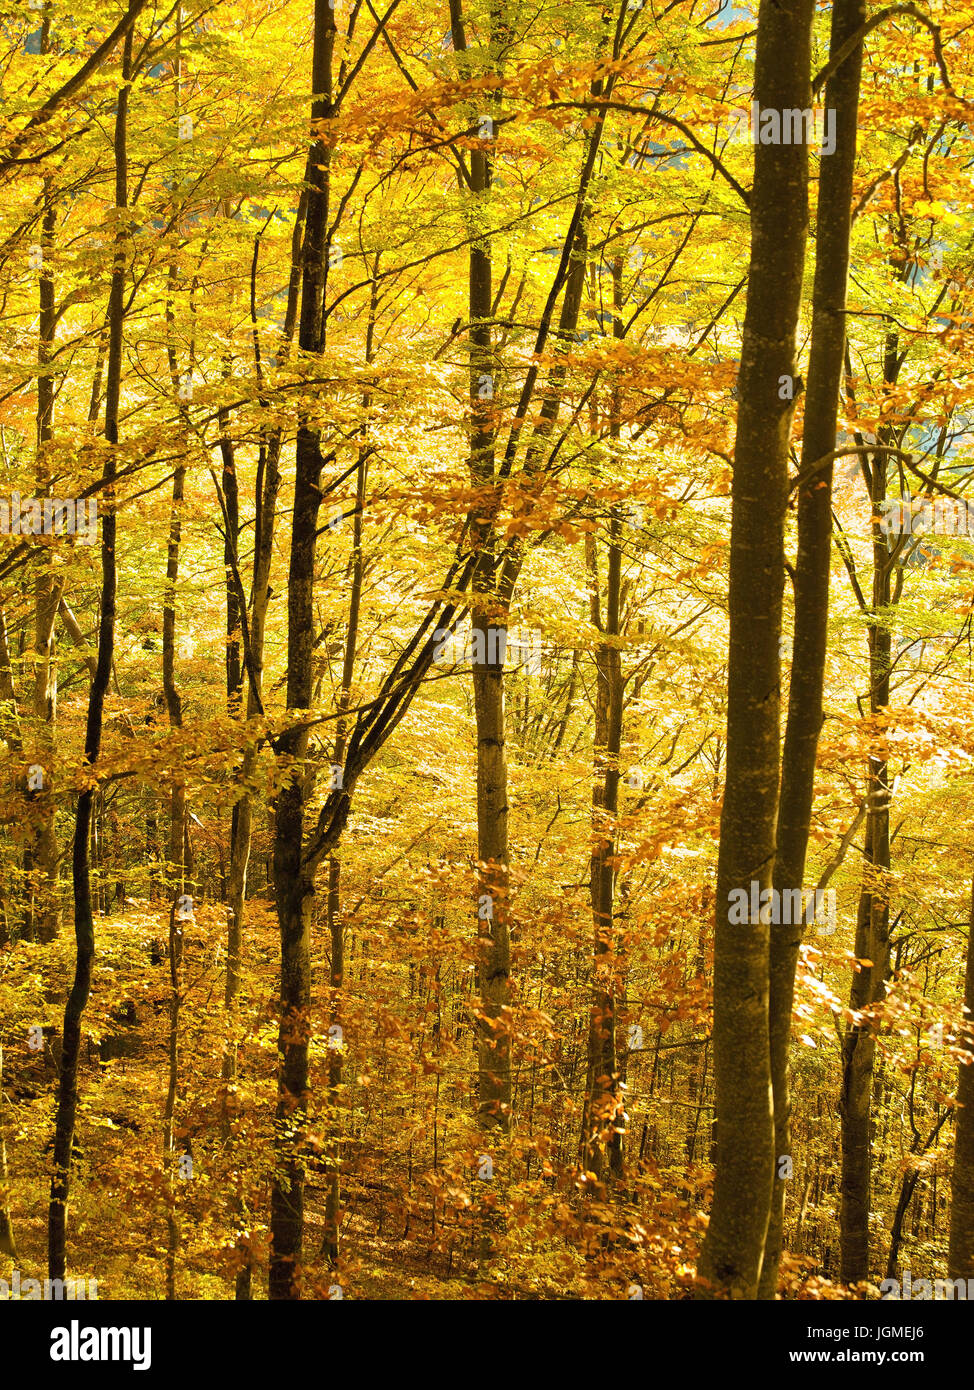 herbstliche Gefa Rbter Buchenwald - Beech Grove im Herbst, Herbstlich GefaÃàrbter Buchenwald - Beech Grove im Herbst Stockfoto